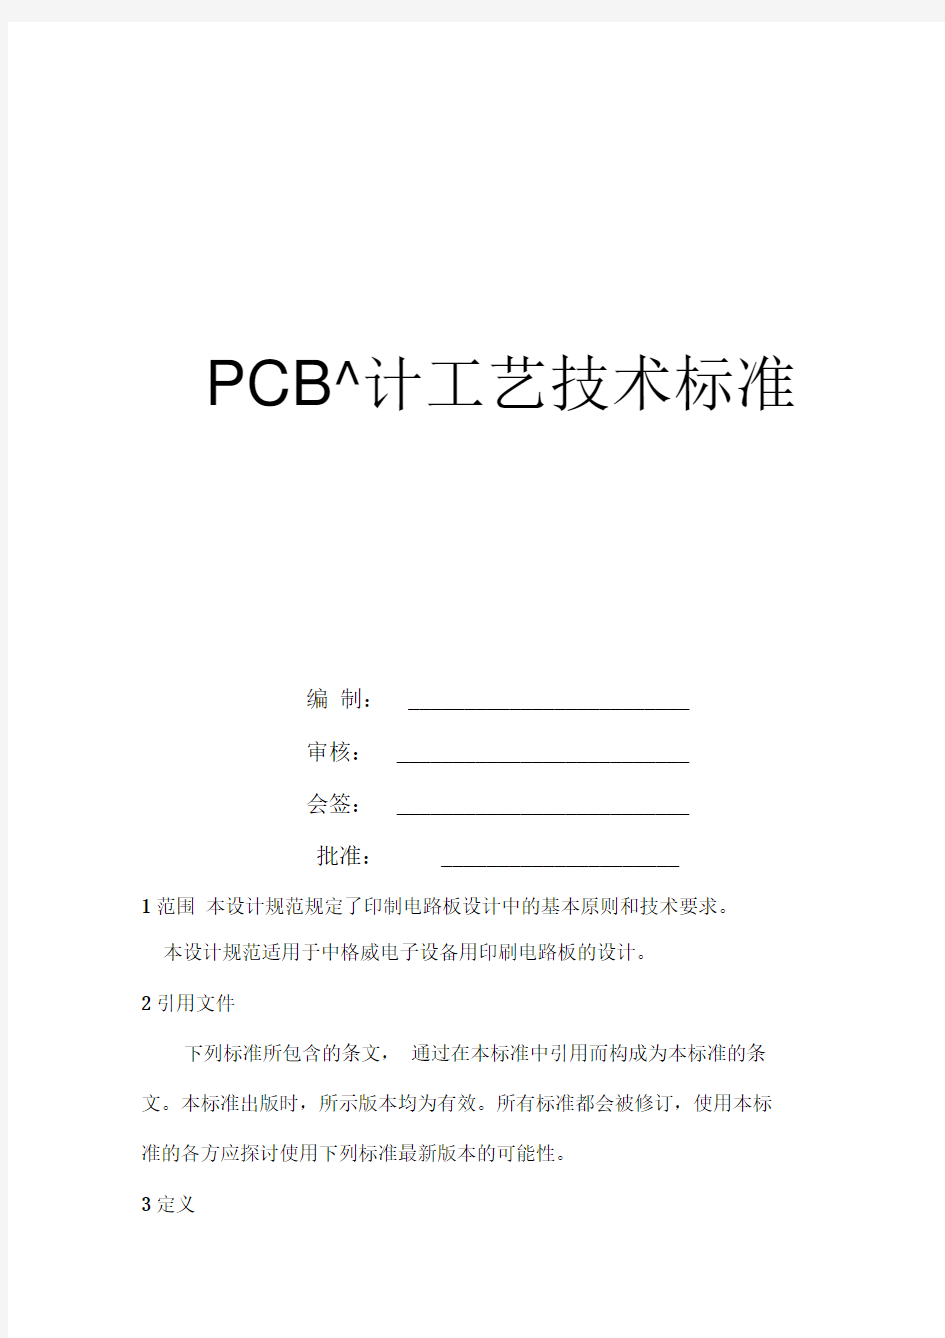 PCB设计工艺技术标准